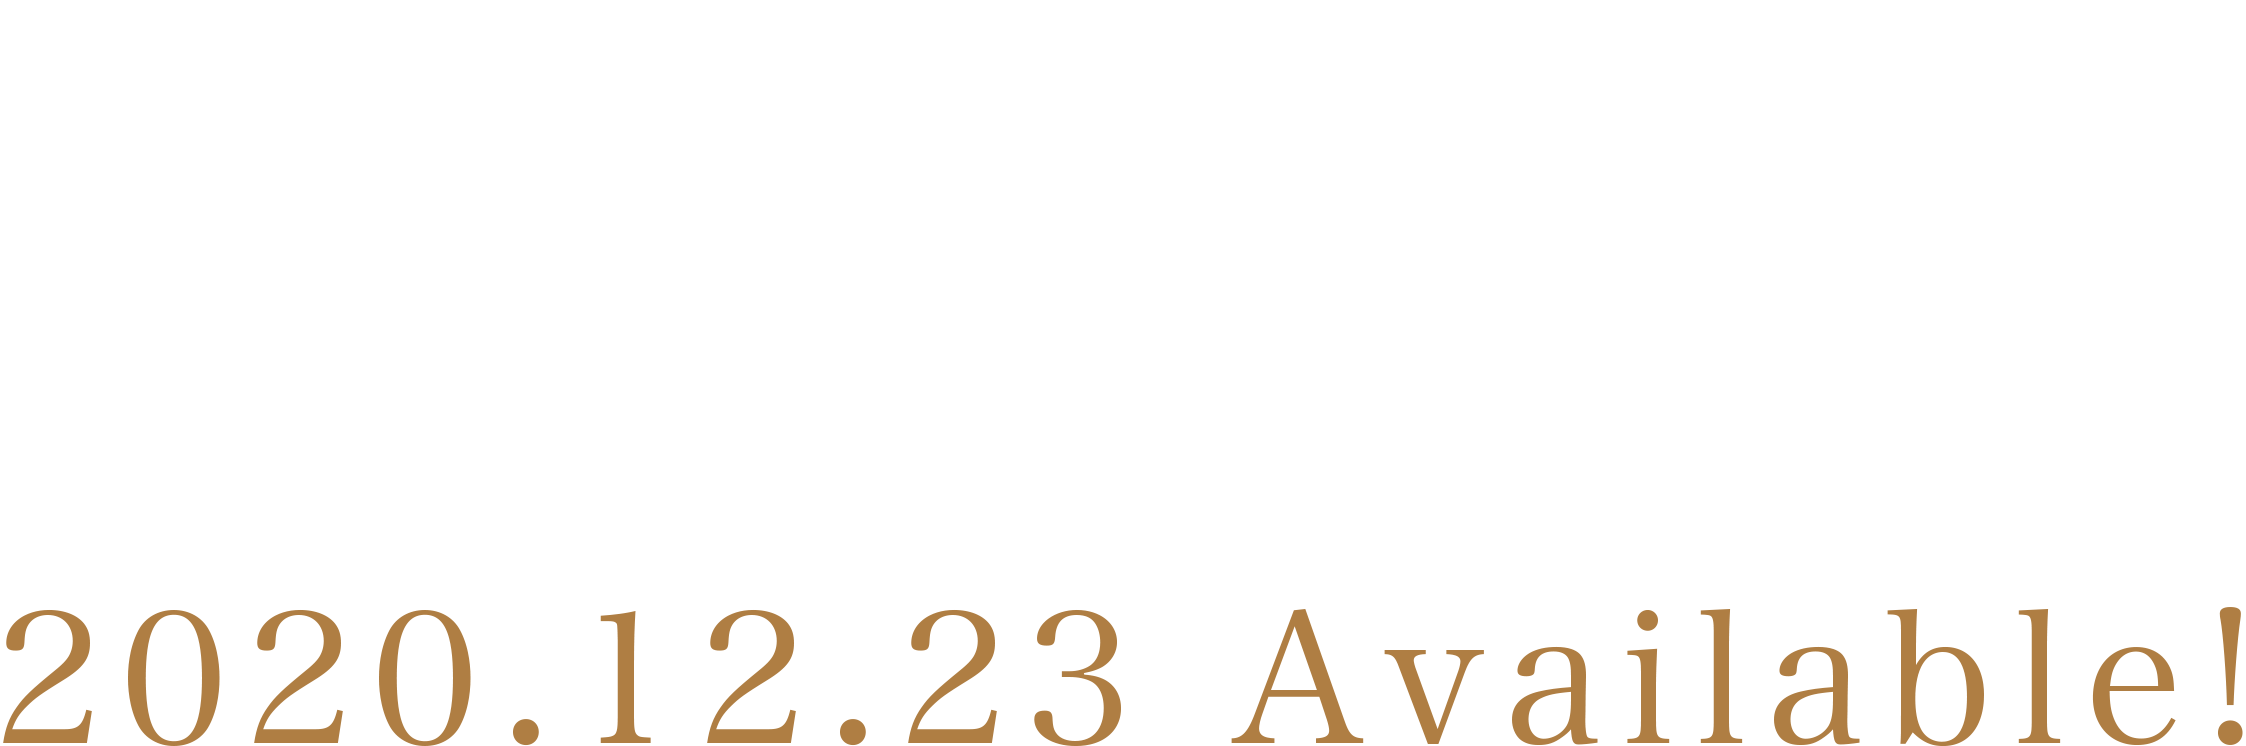 BABYMETAL BEST ALBUM「10 BABYMETAL YEARS」2020.12.23 ONSALE!